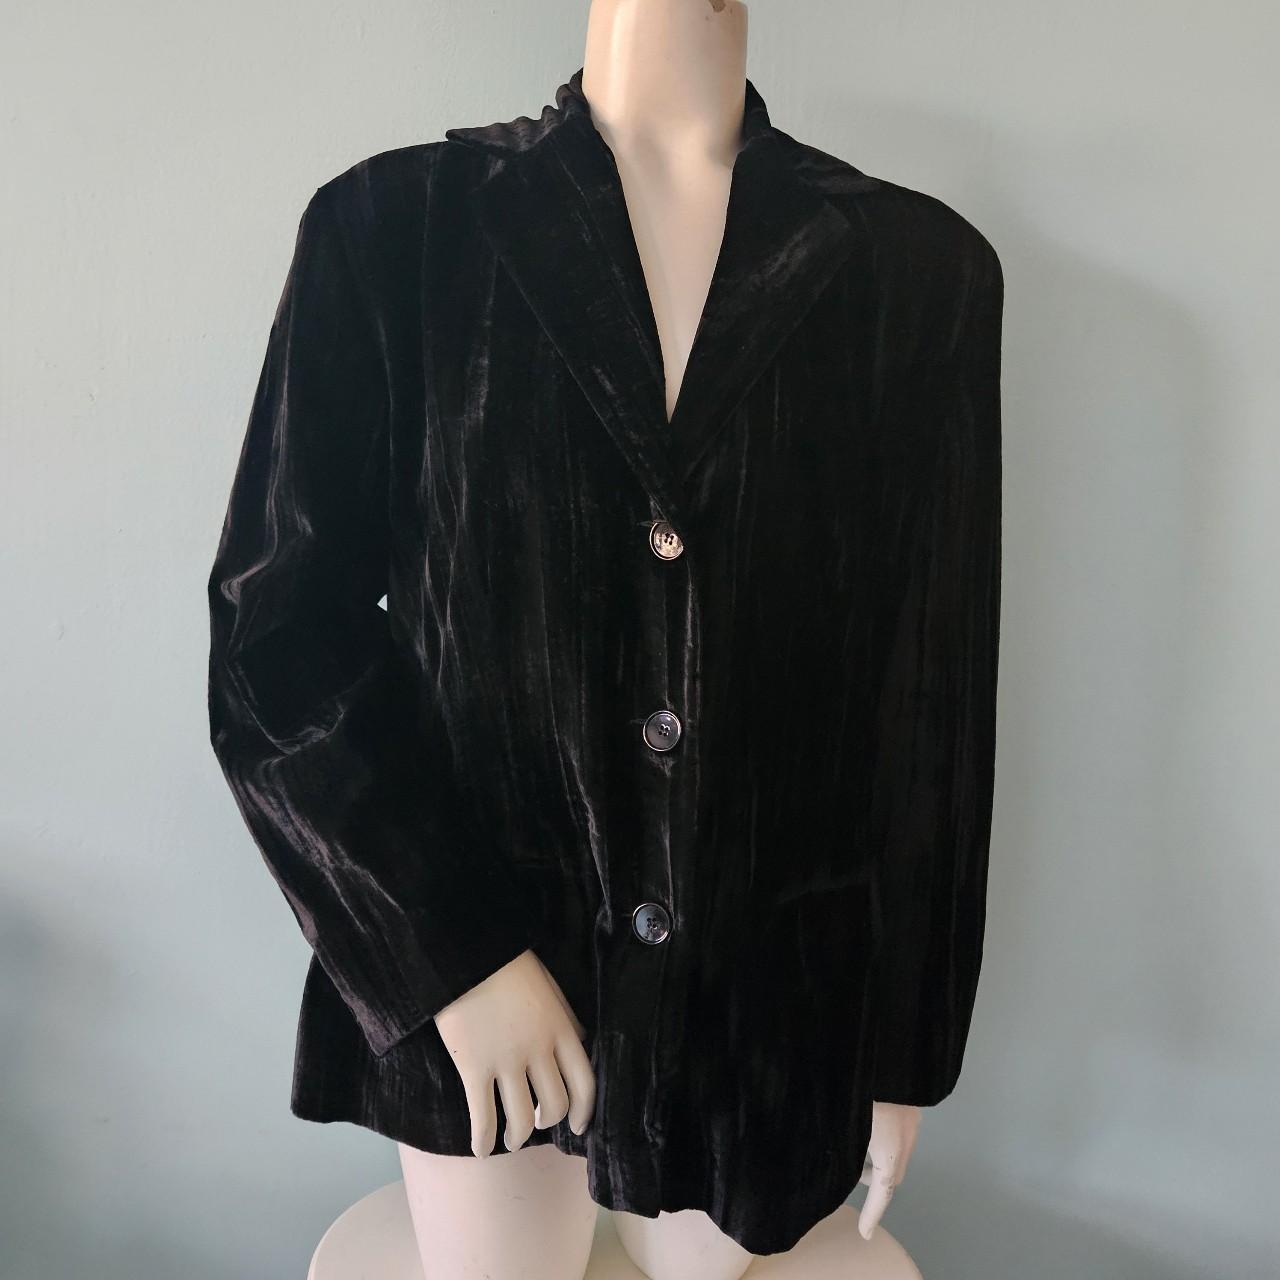 Lovely crushed velvet-style black blazer jacket,... - Depop